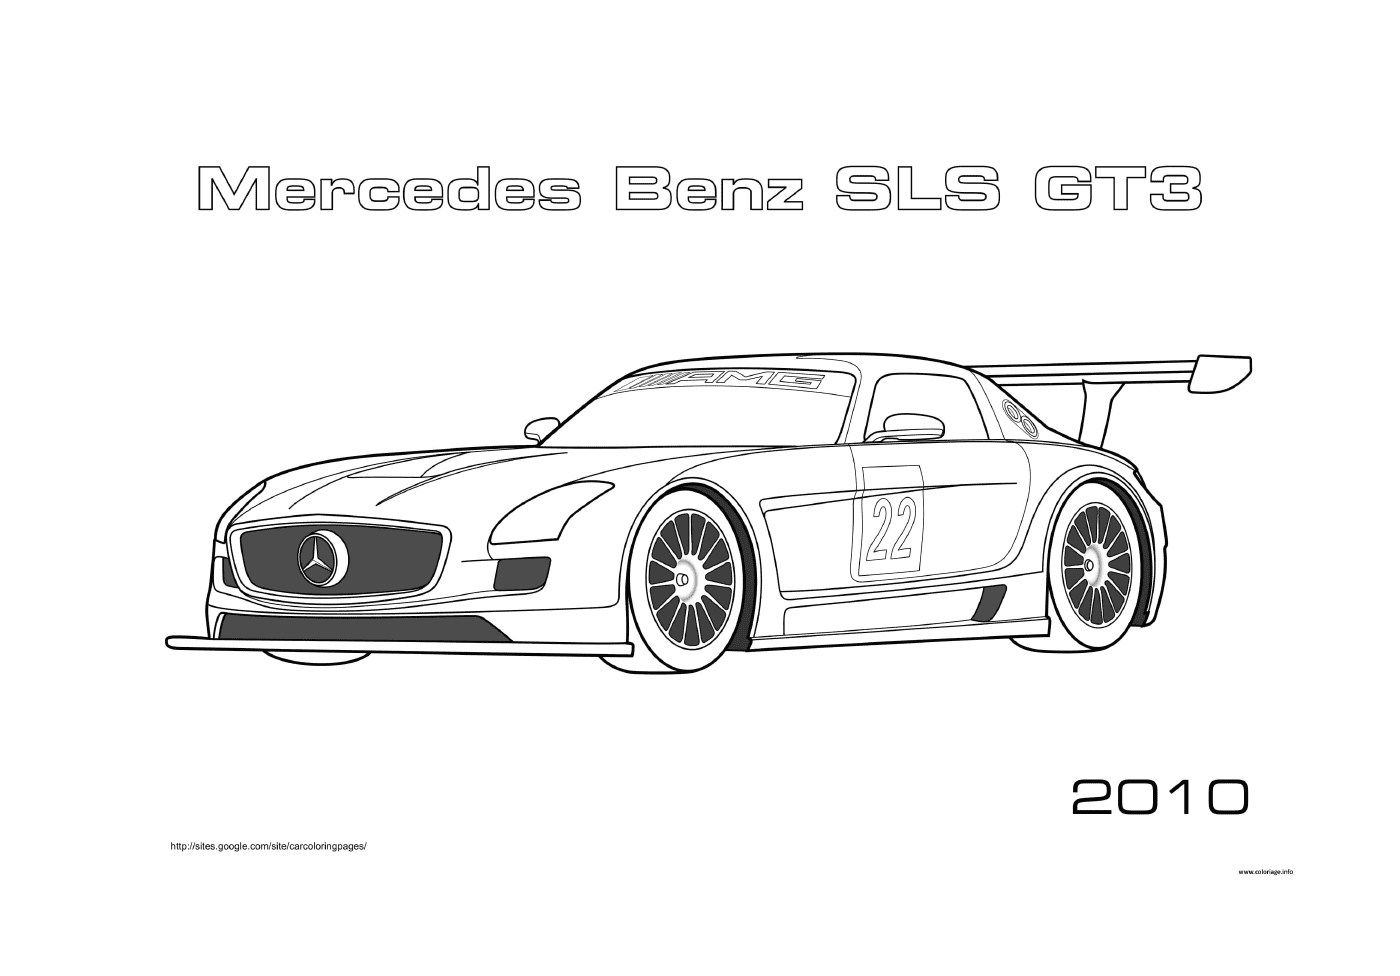  Mercedes-Benz SLS GT3 carro de corrida 